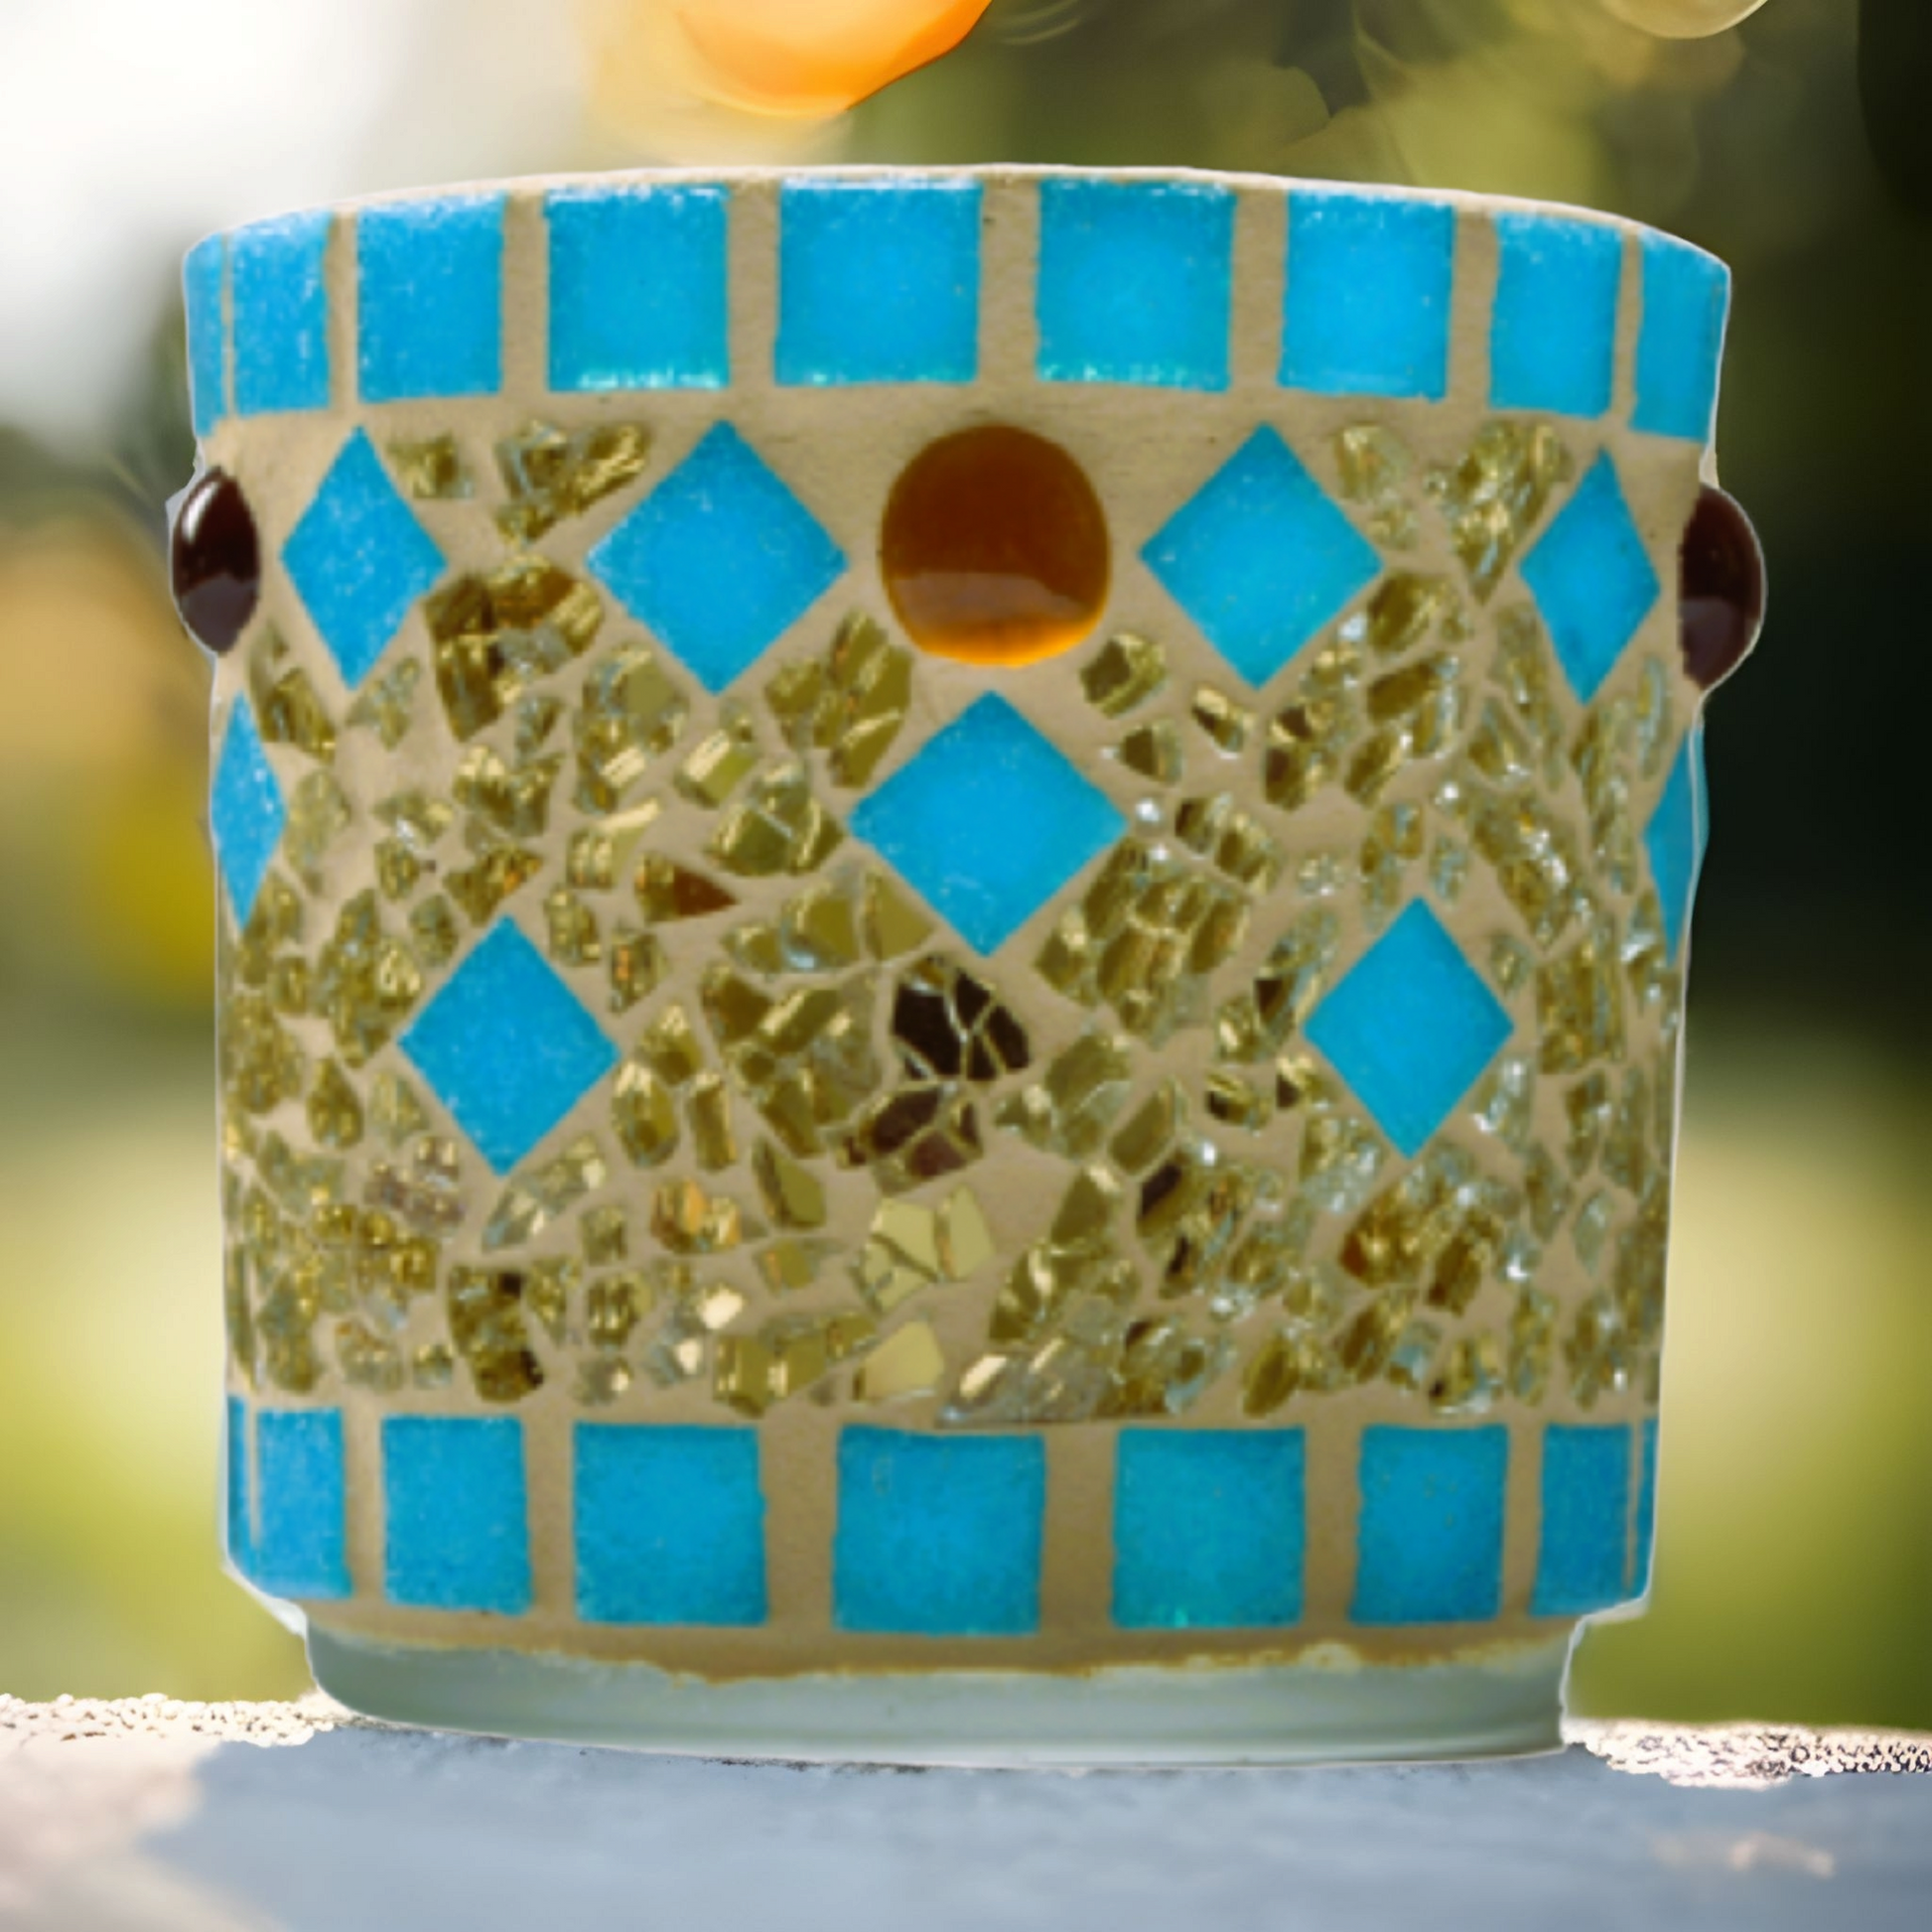 Mosaik Windlicht türkis gold 7 cm hoch - handgemacht - Mosaikkasten aus alt mach neu dekoidee